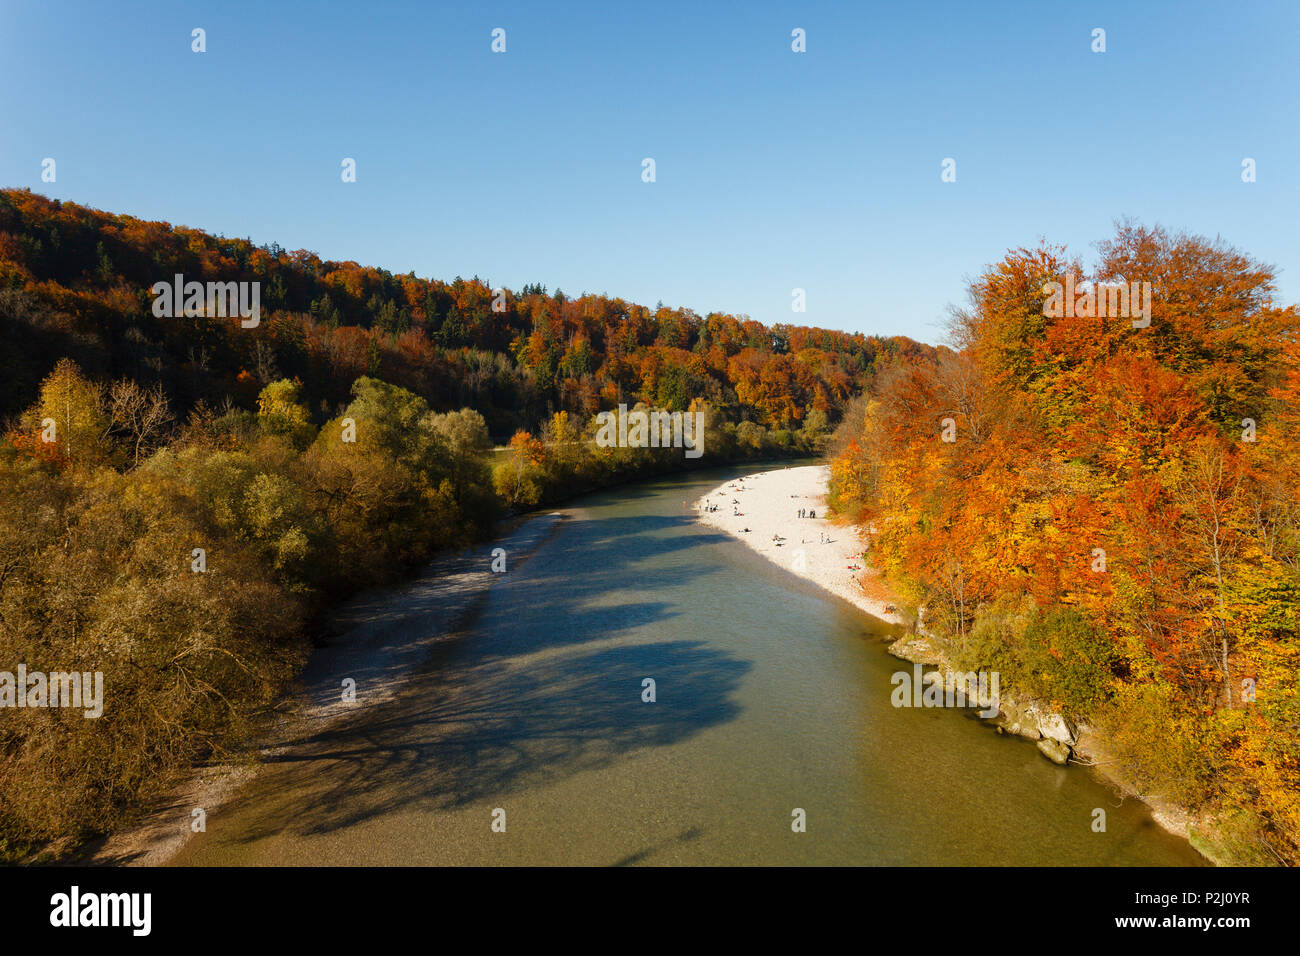 Río Isar y valle del Isar en otoño, verano indio, hayedos y bancos de arena cerca de Gruenwald, distrito de Munich de Baviera, alpi Foto de stock